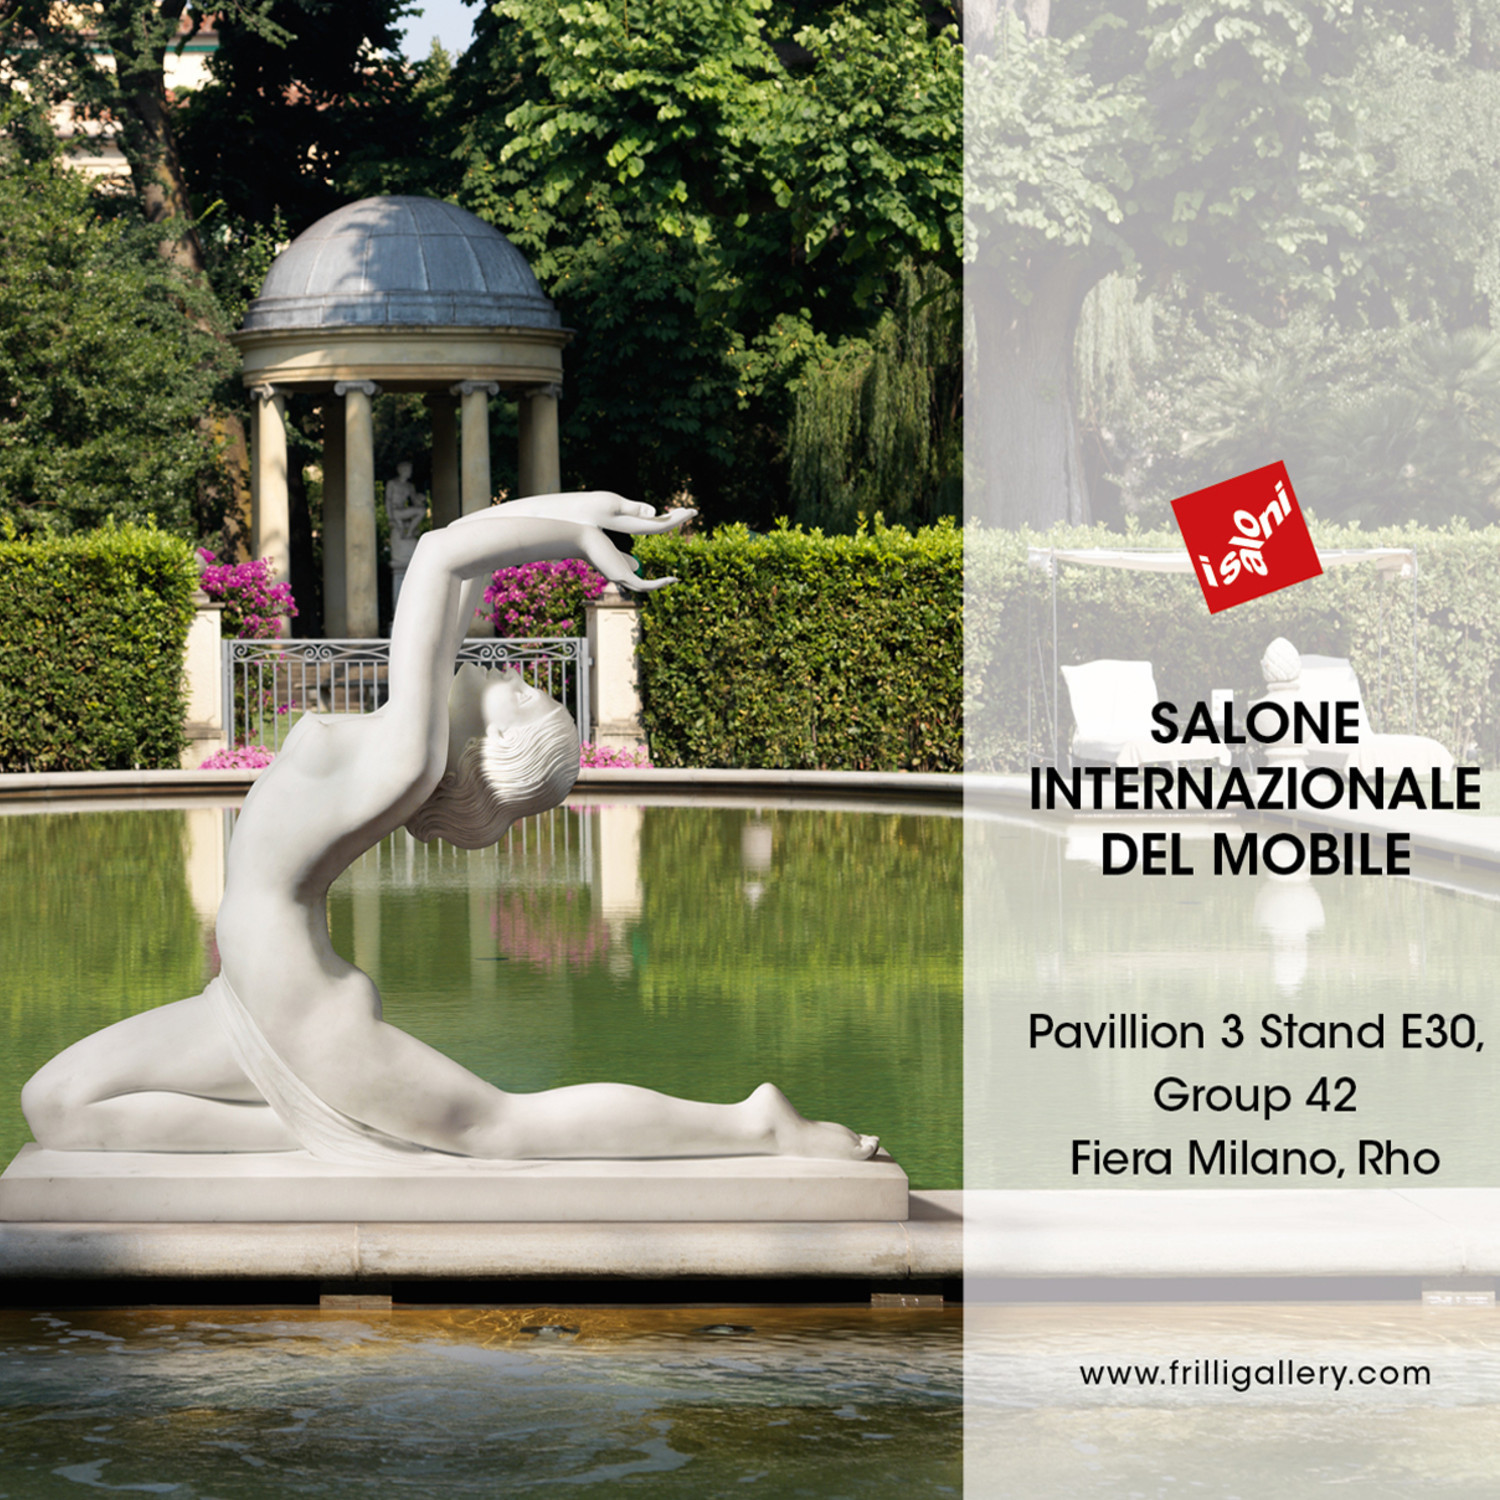 The+Frilli+Gallery+%40+Salone+Internazionale+del+Mobile+2014